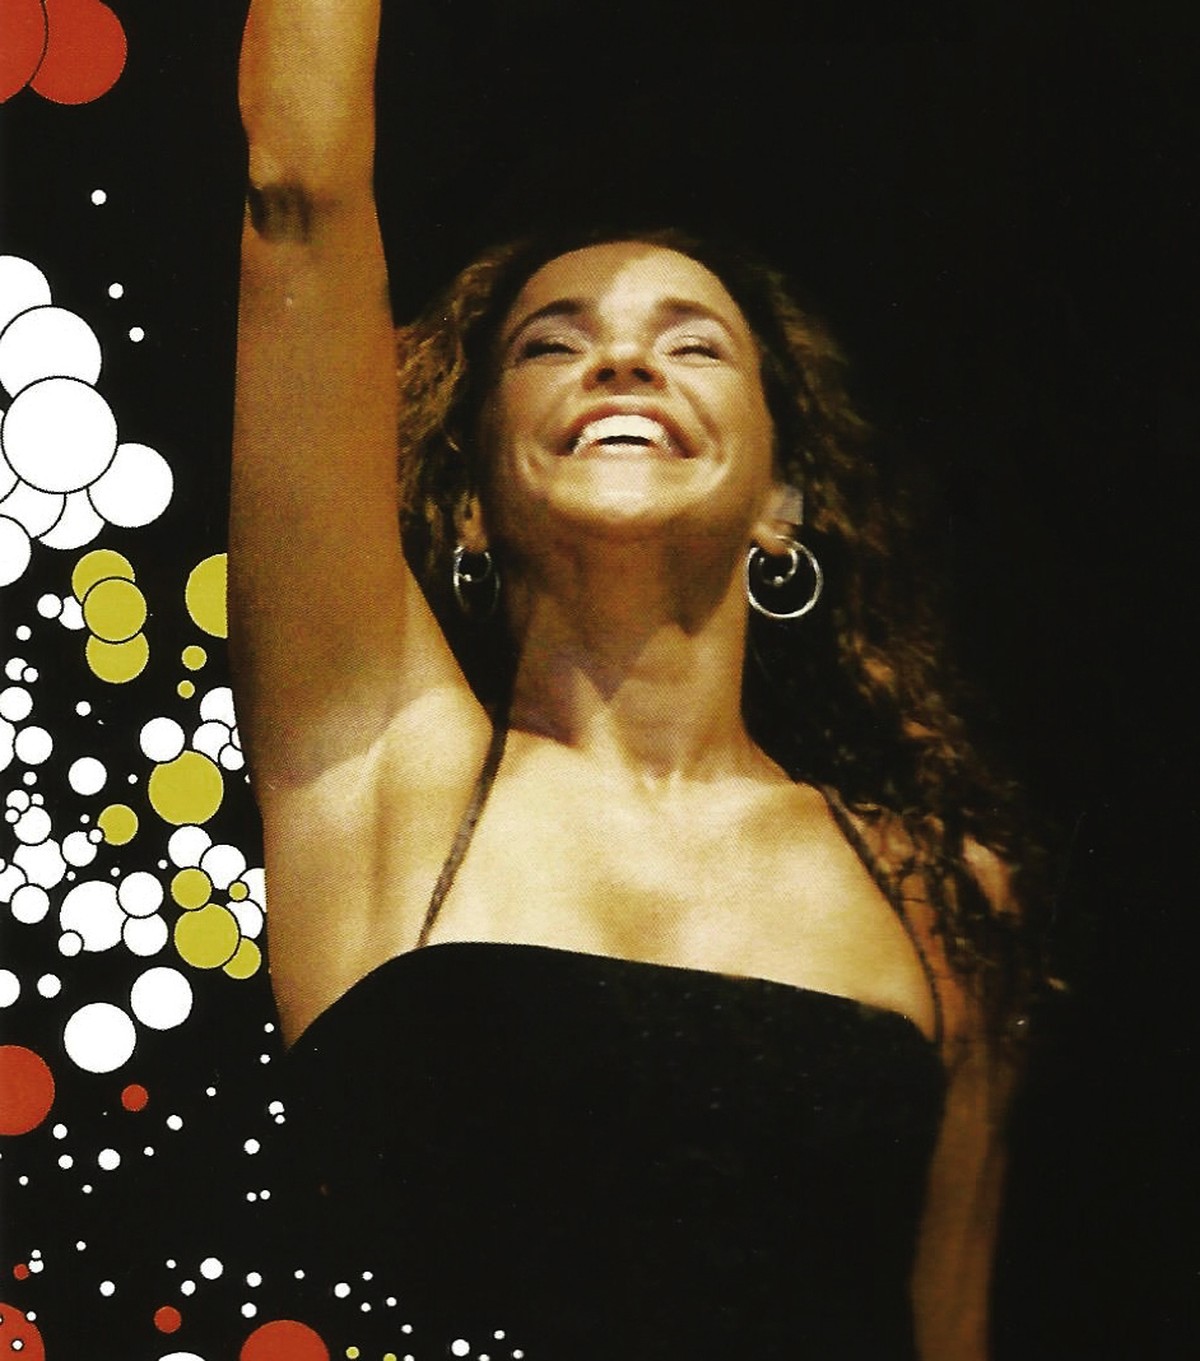 Álbum que consagrou Daniela Mercury em 1992 é dissecado em livro que aponta o branqueamento da axé tune |  Weblog do Mauro Ferreira